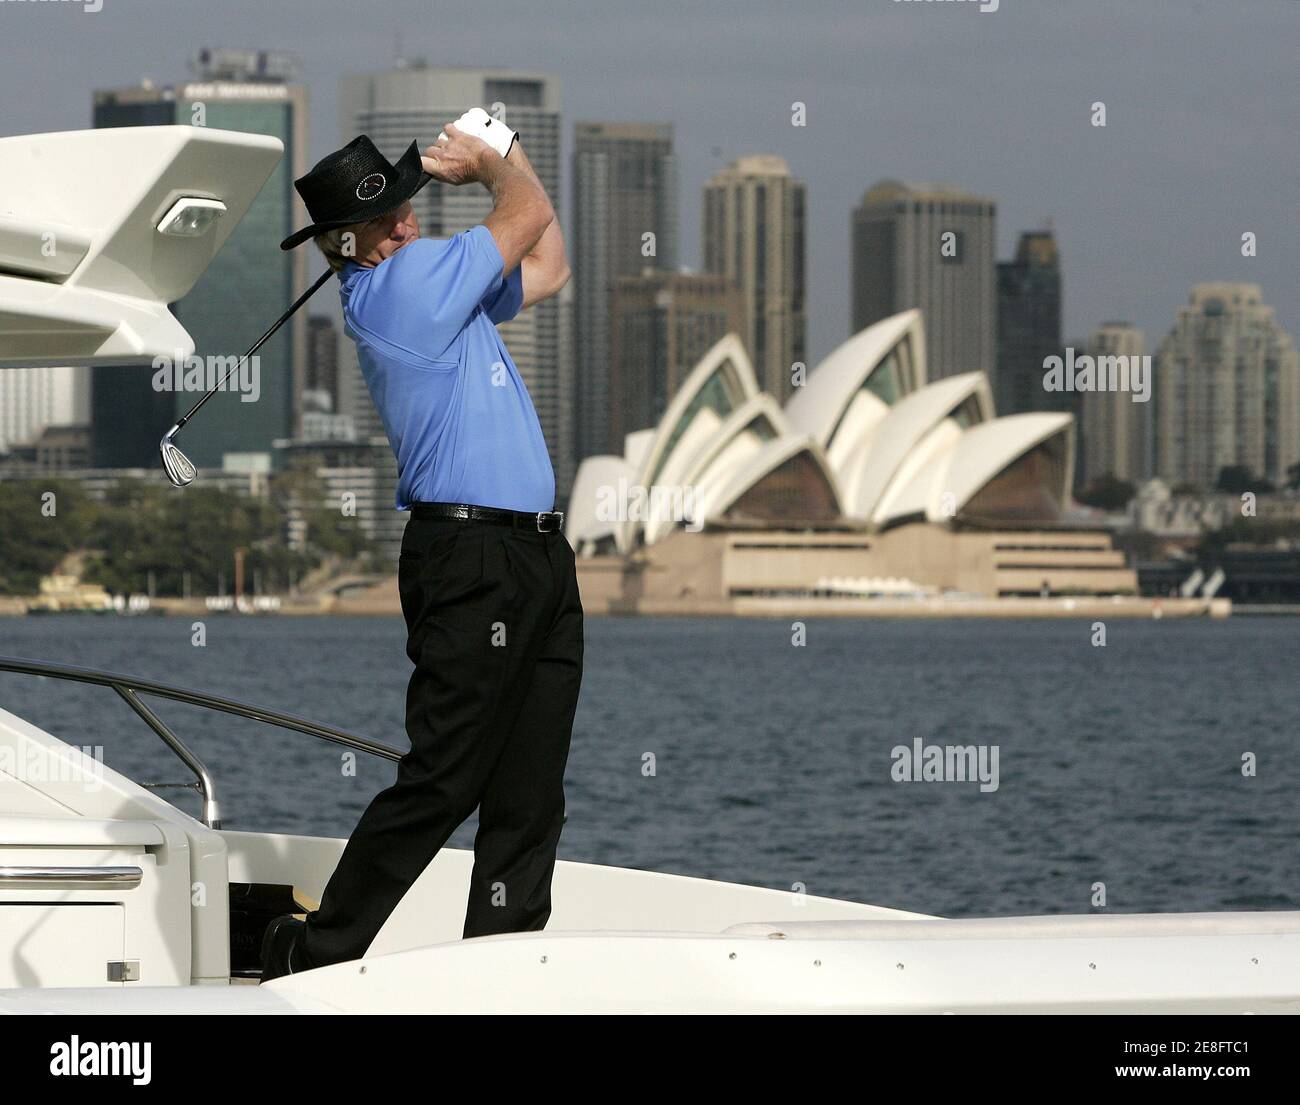 Greg Norman, golfeur australien, poursuit pendant son swing depuis l'arrière d'un yacht de luxe sur le port de Sydney le 11 mai 2006. Norman faisait la promotion du championnat de golf Open d'Australie qui se tiendra à Sydney du 13 au 19 novembre. REUTERS/will Burgess Banque D'Images